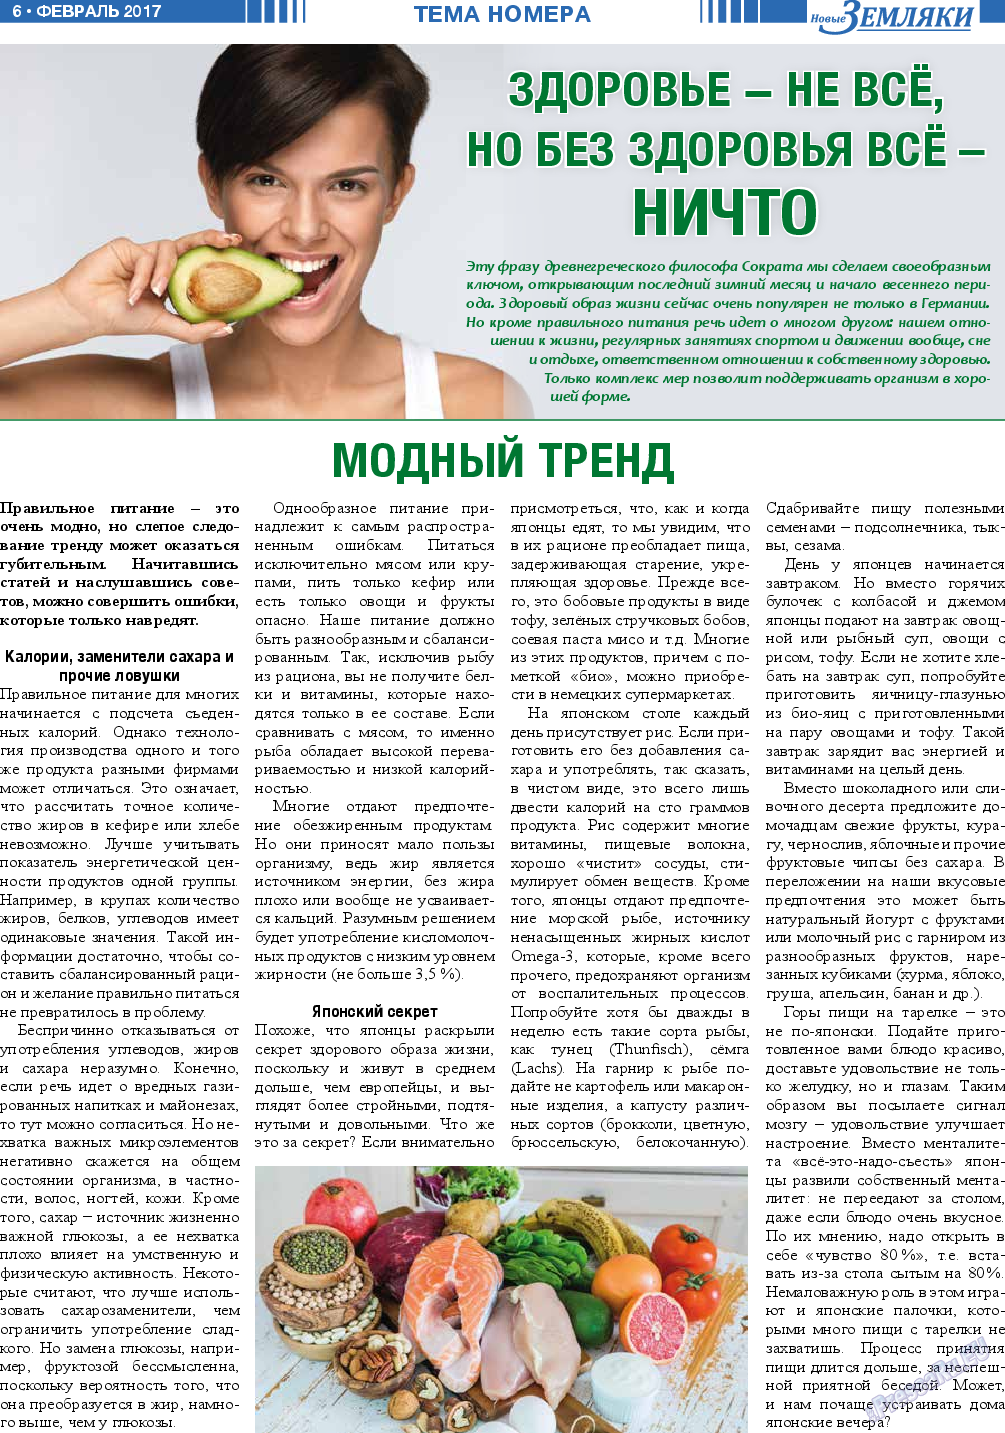 Новые Земляки, газета. 2017 №2 стр.6